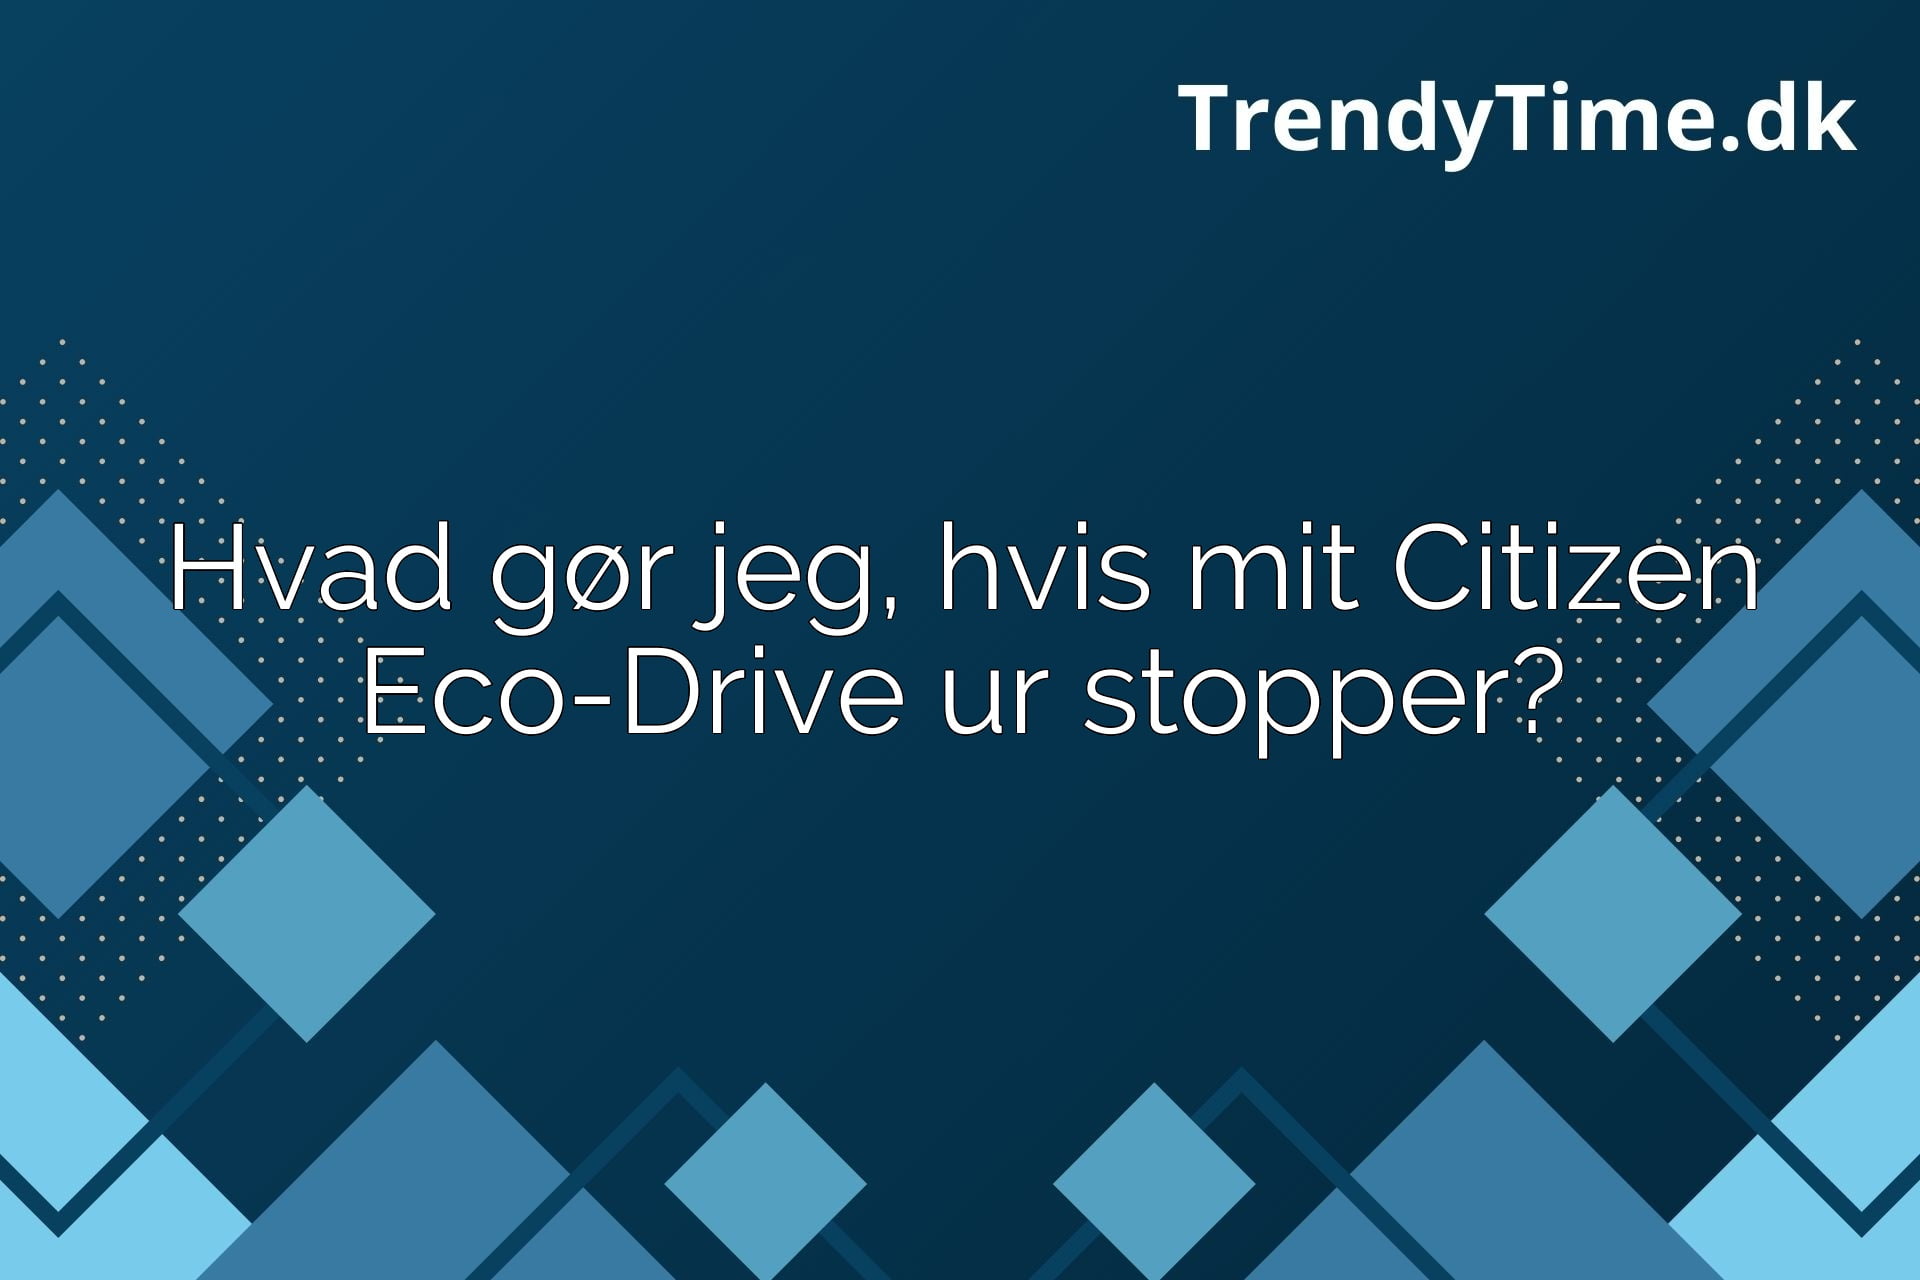 Hvad gør jeg, hvis mit Citizen Eco-Drive ur stopper?